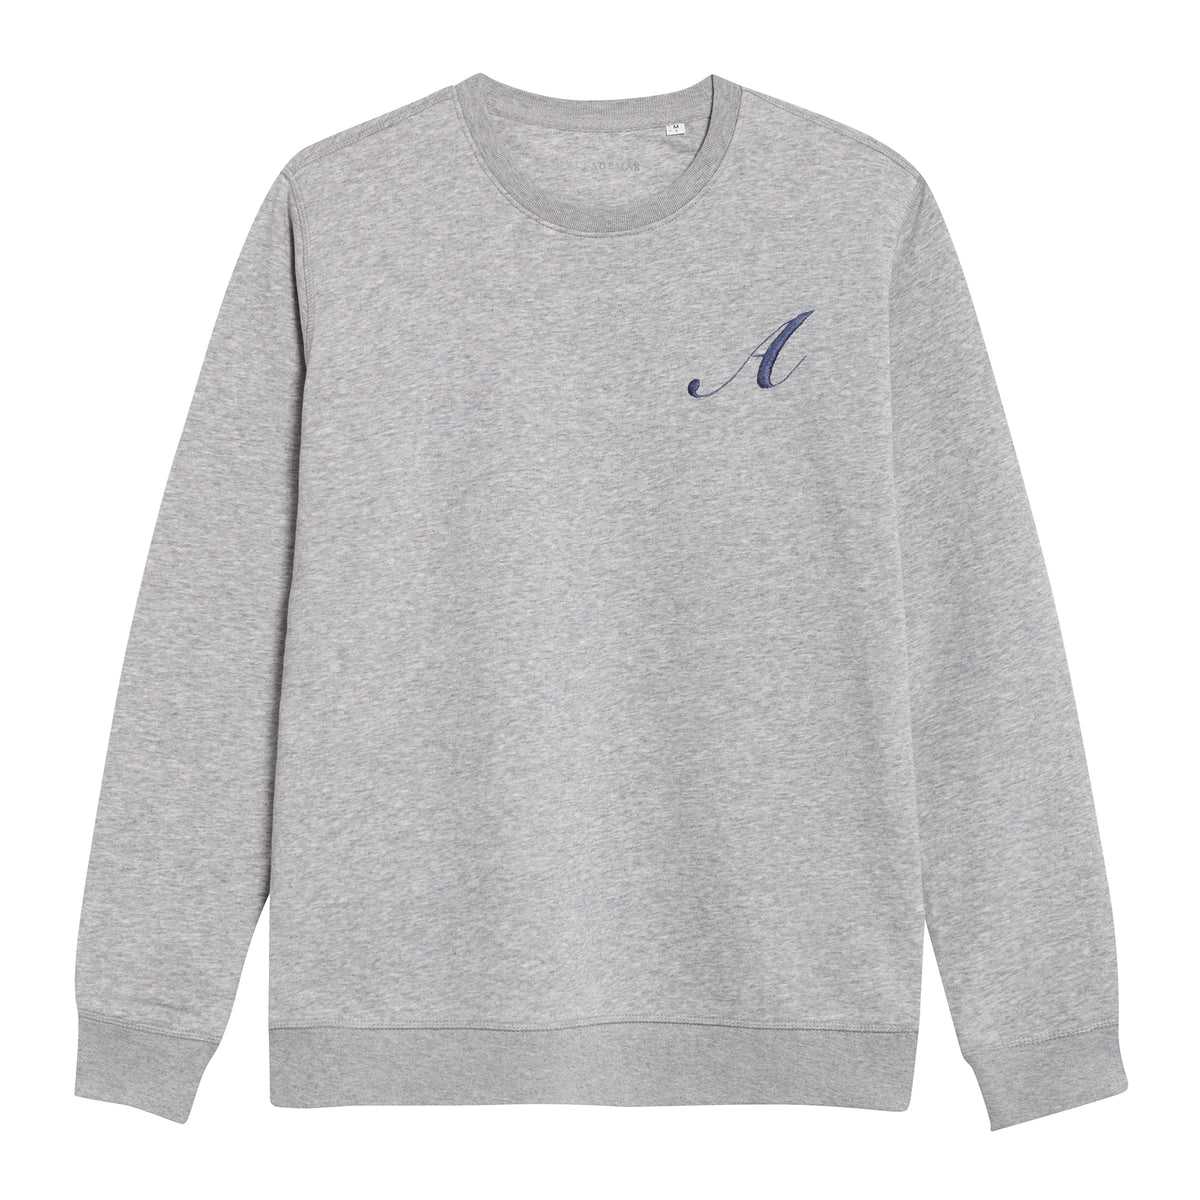 Personalized ANCLADEMAR Grey Sweatshirt